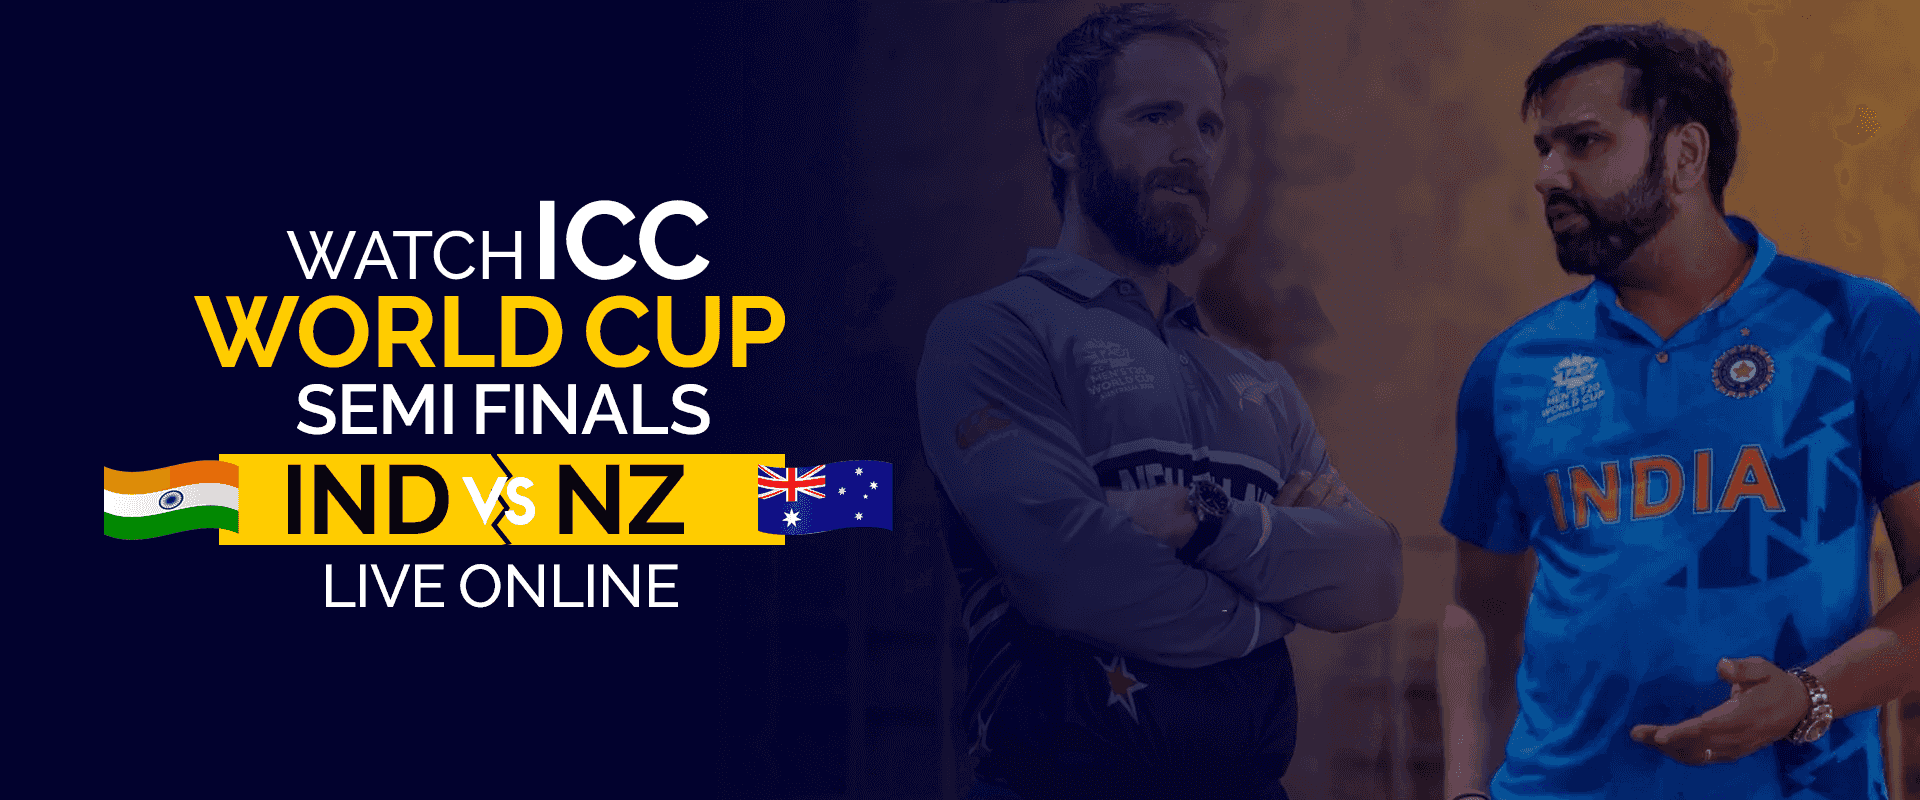 Bekijk ICC World Cup halve finale IND vs NZ live online